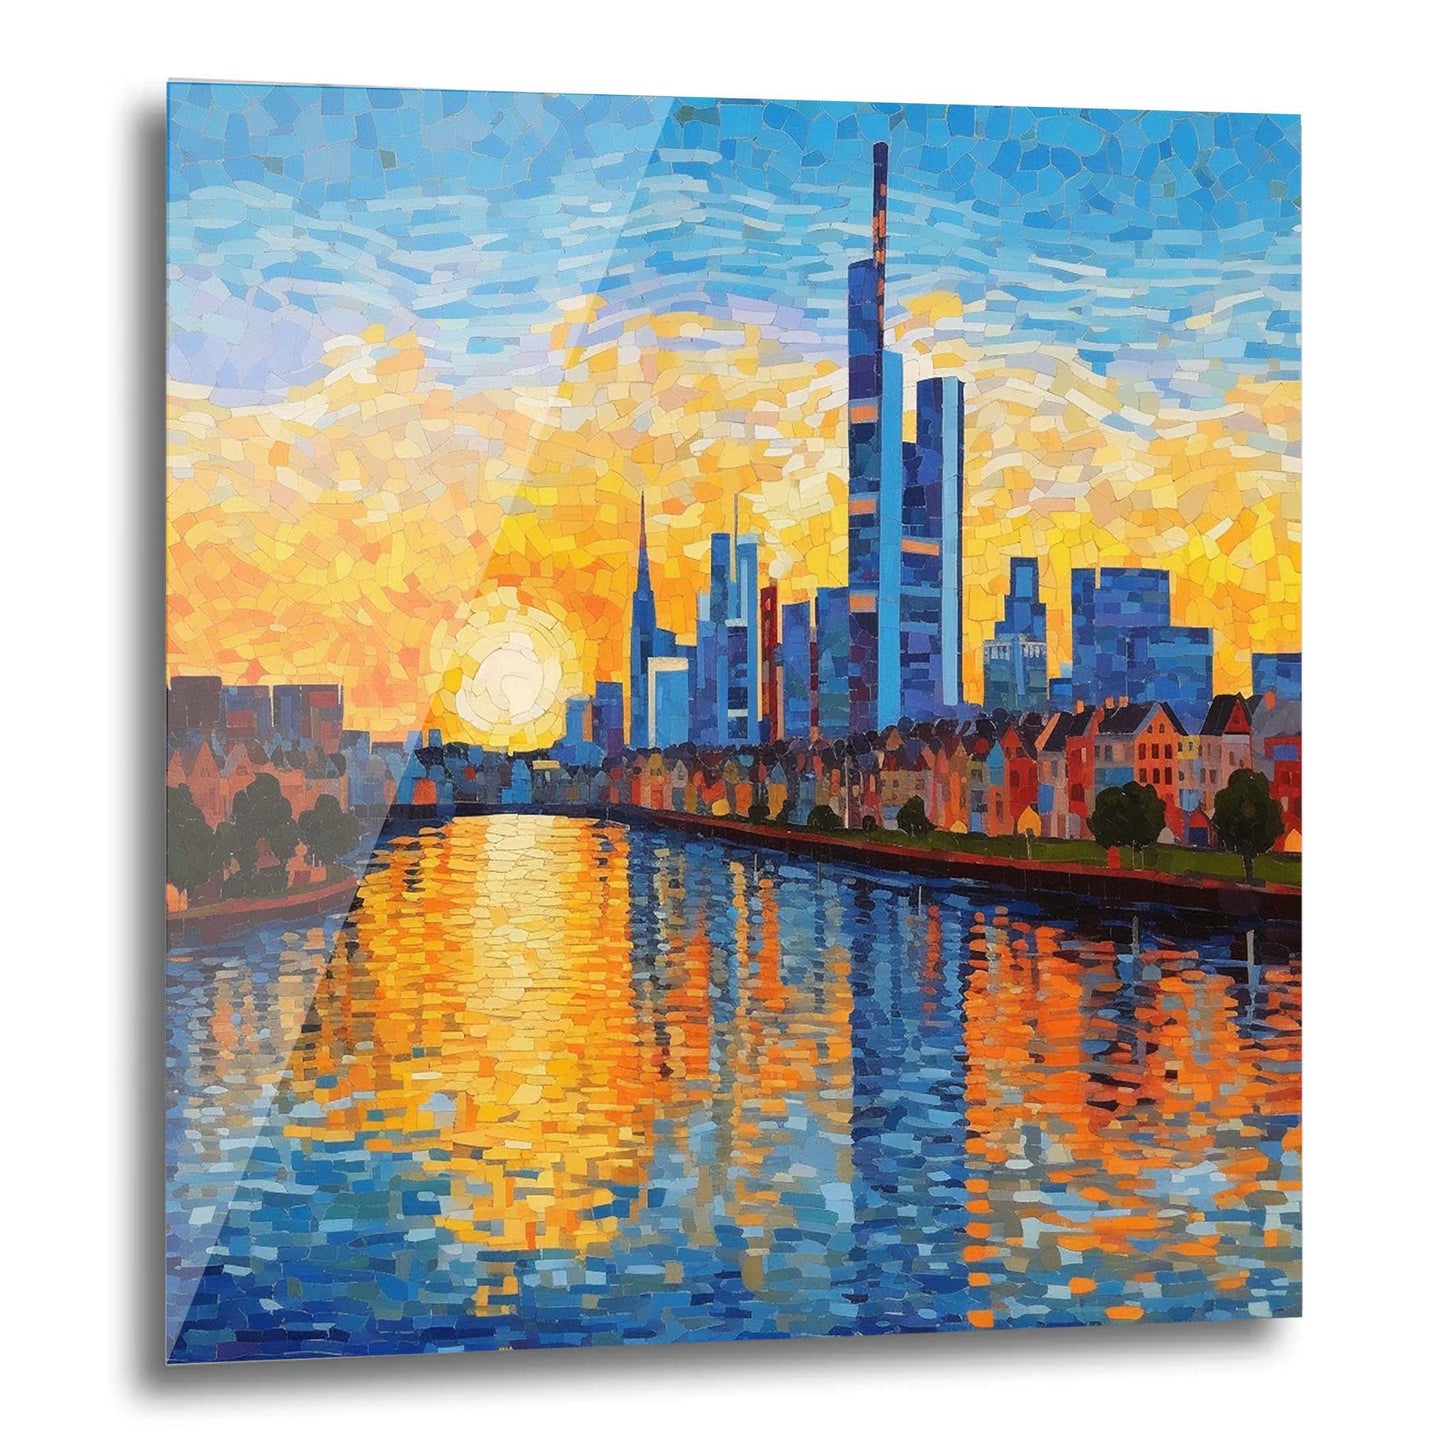 Frankfurt Skyline - Wandbild in der Stilrichtung des Impressionismus